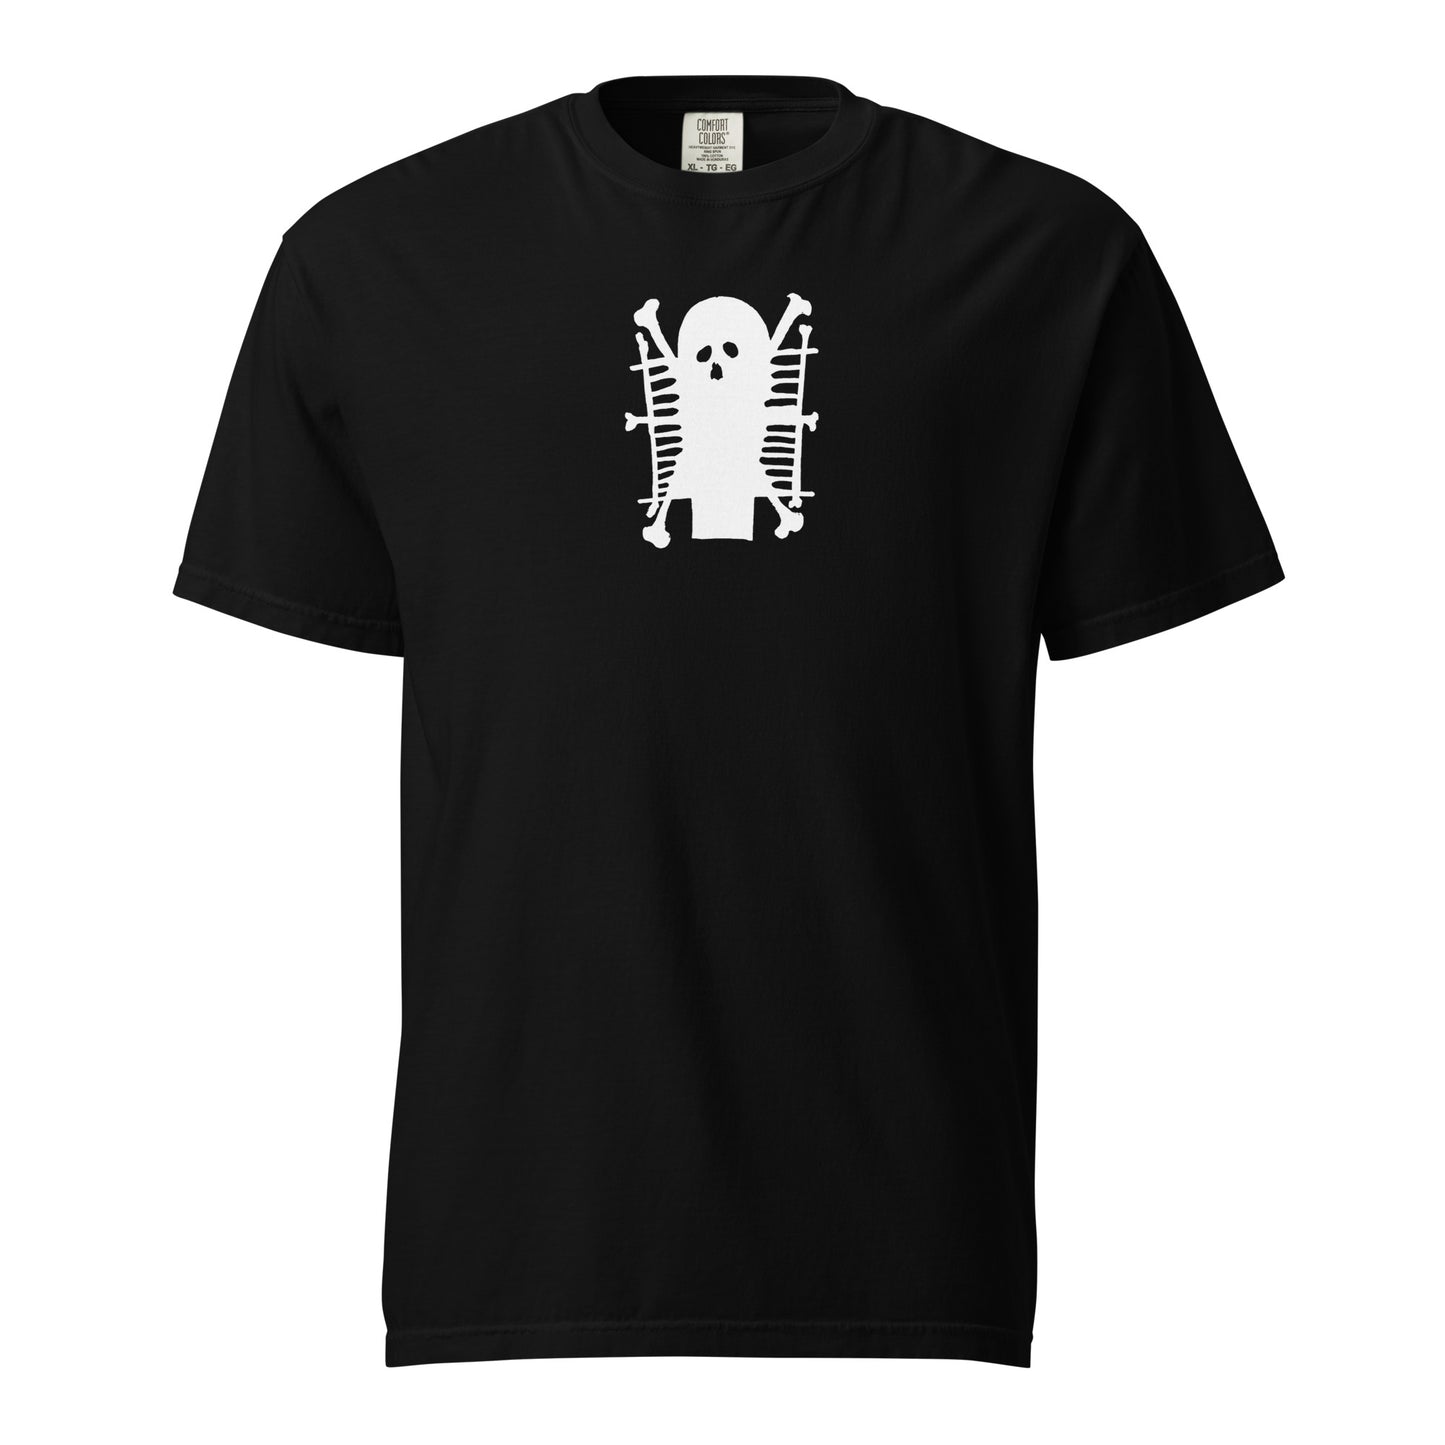 SICS - Ghost - baobabwod artwear - Special Edition - T-Shirt